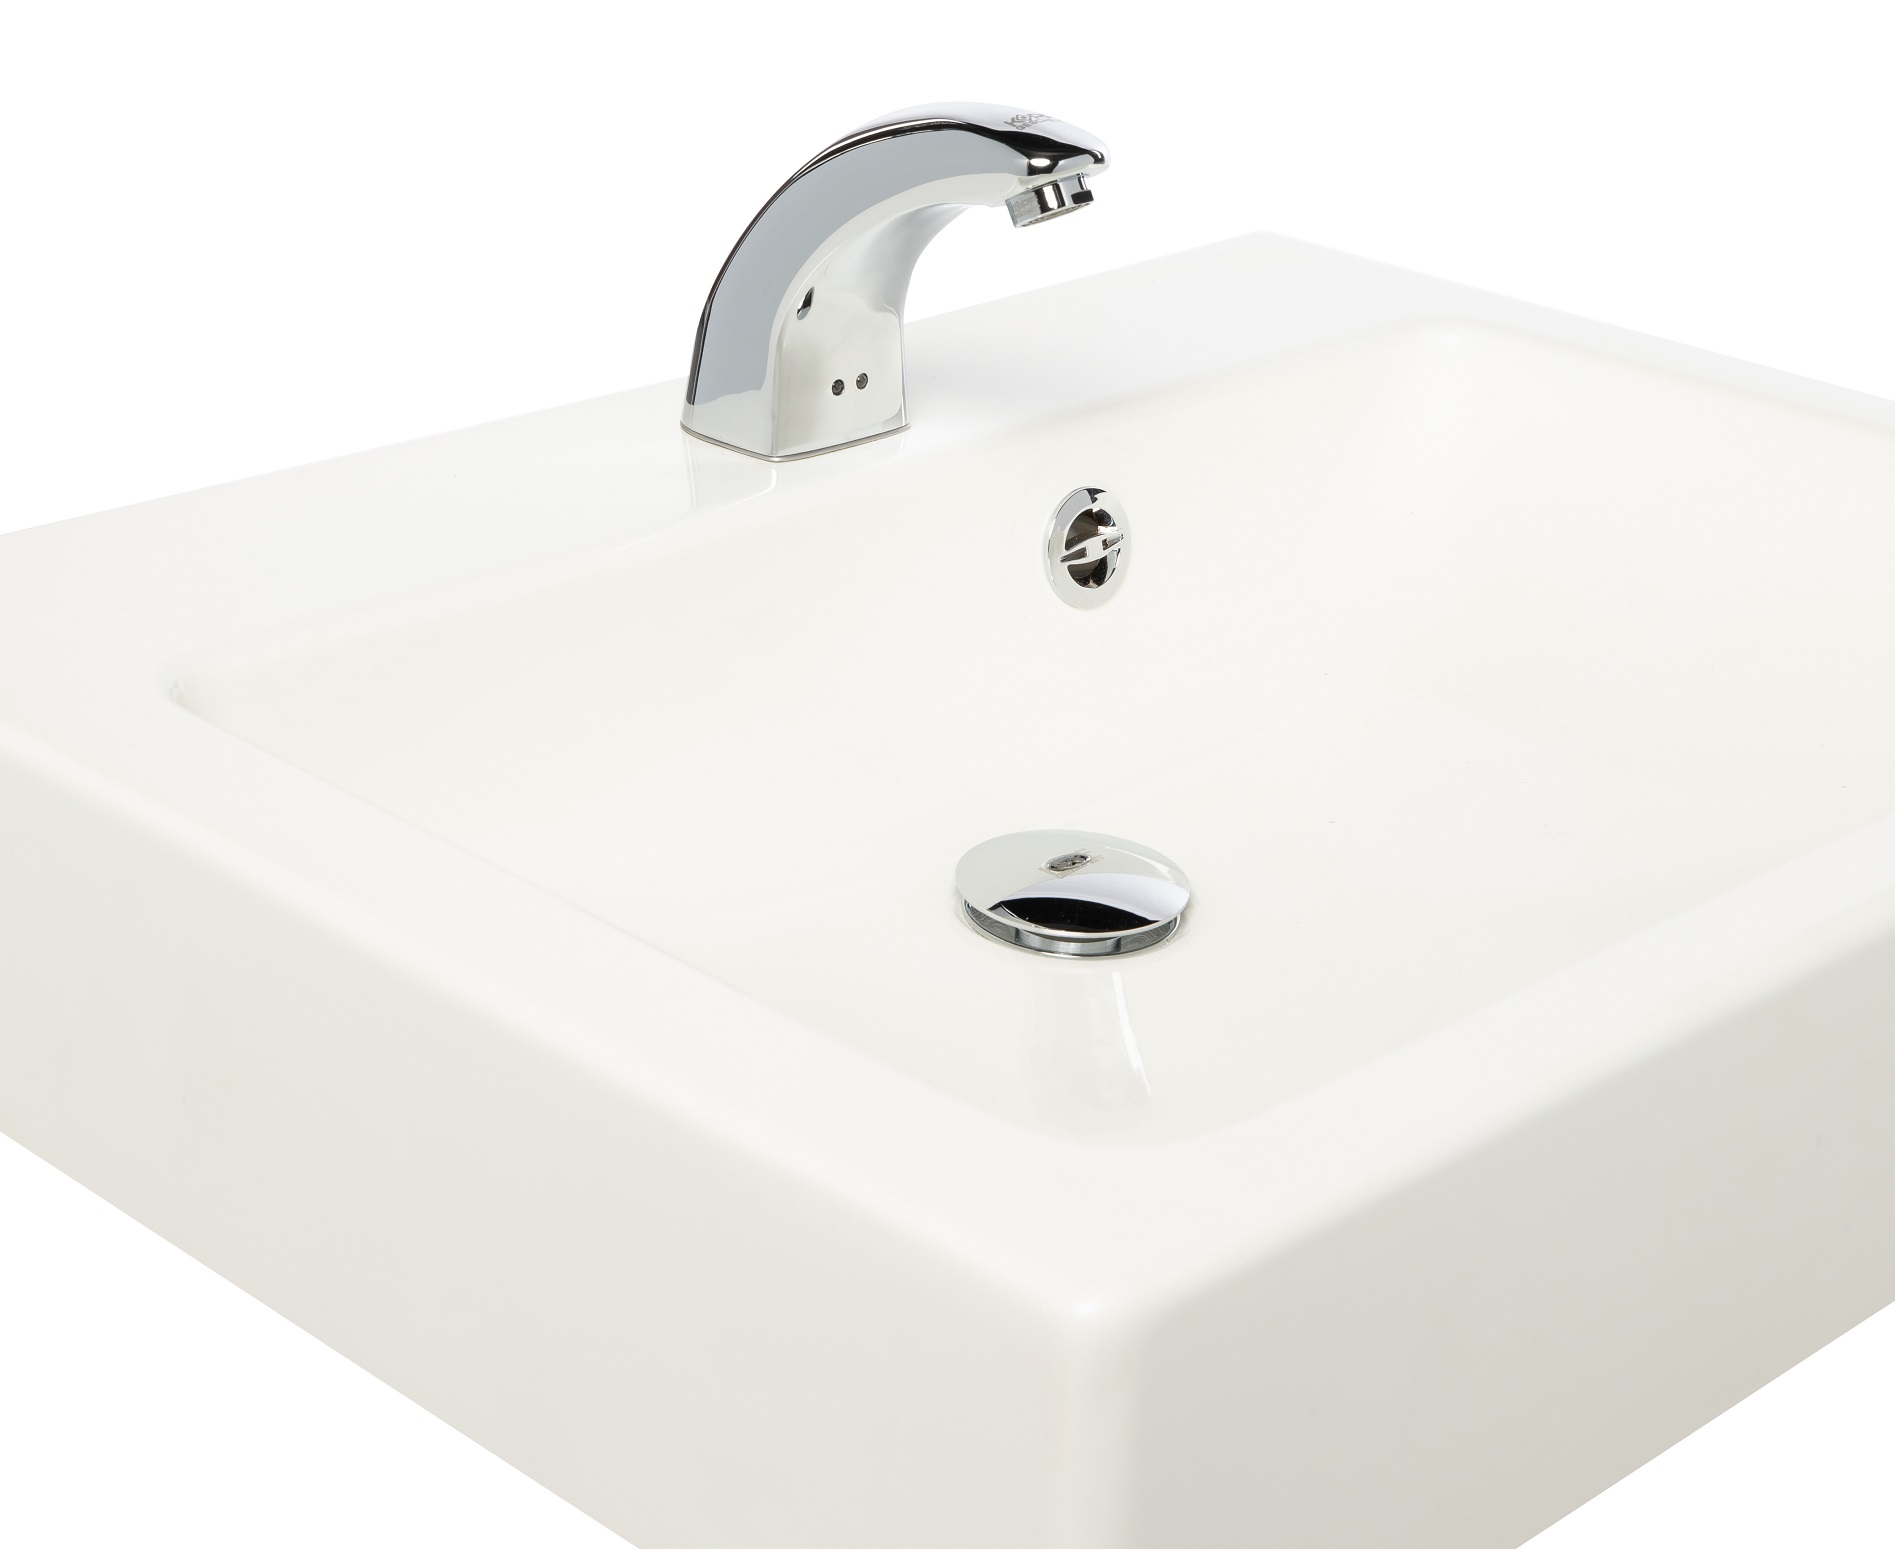 Automatic faucet KR5152V-DC